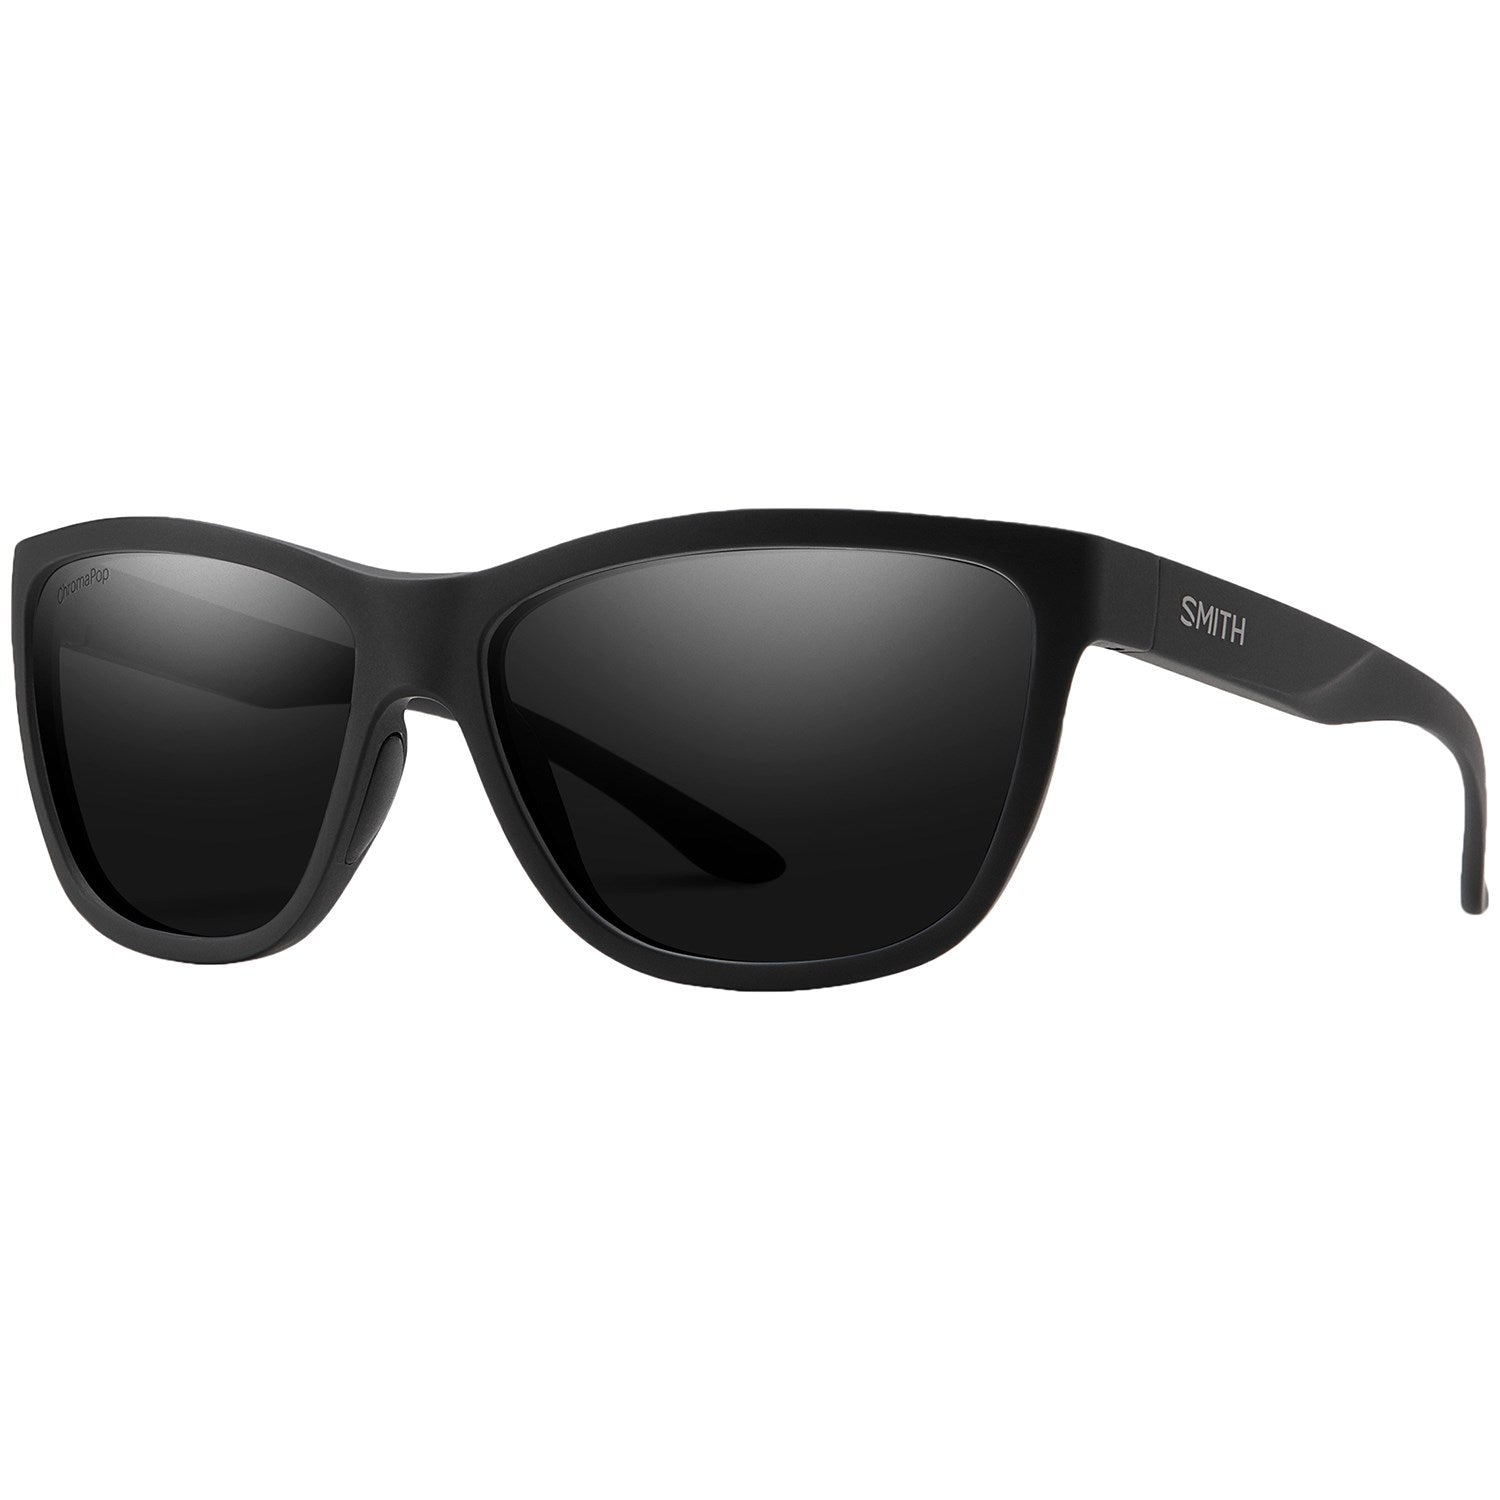 Smith Eclipse Sunglasses - Women's